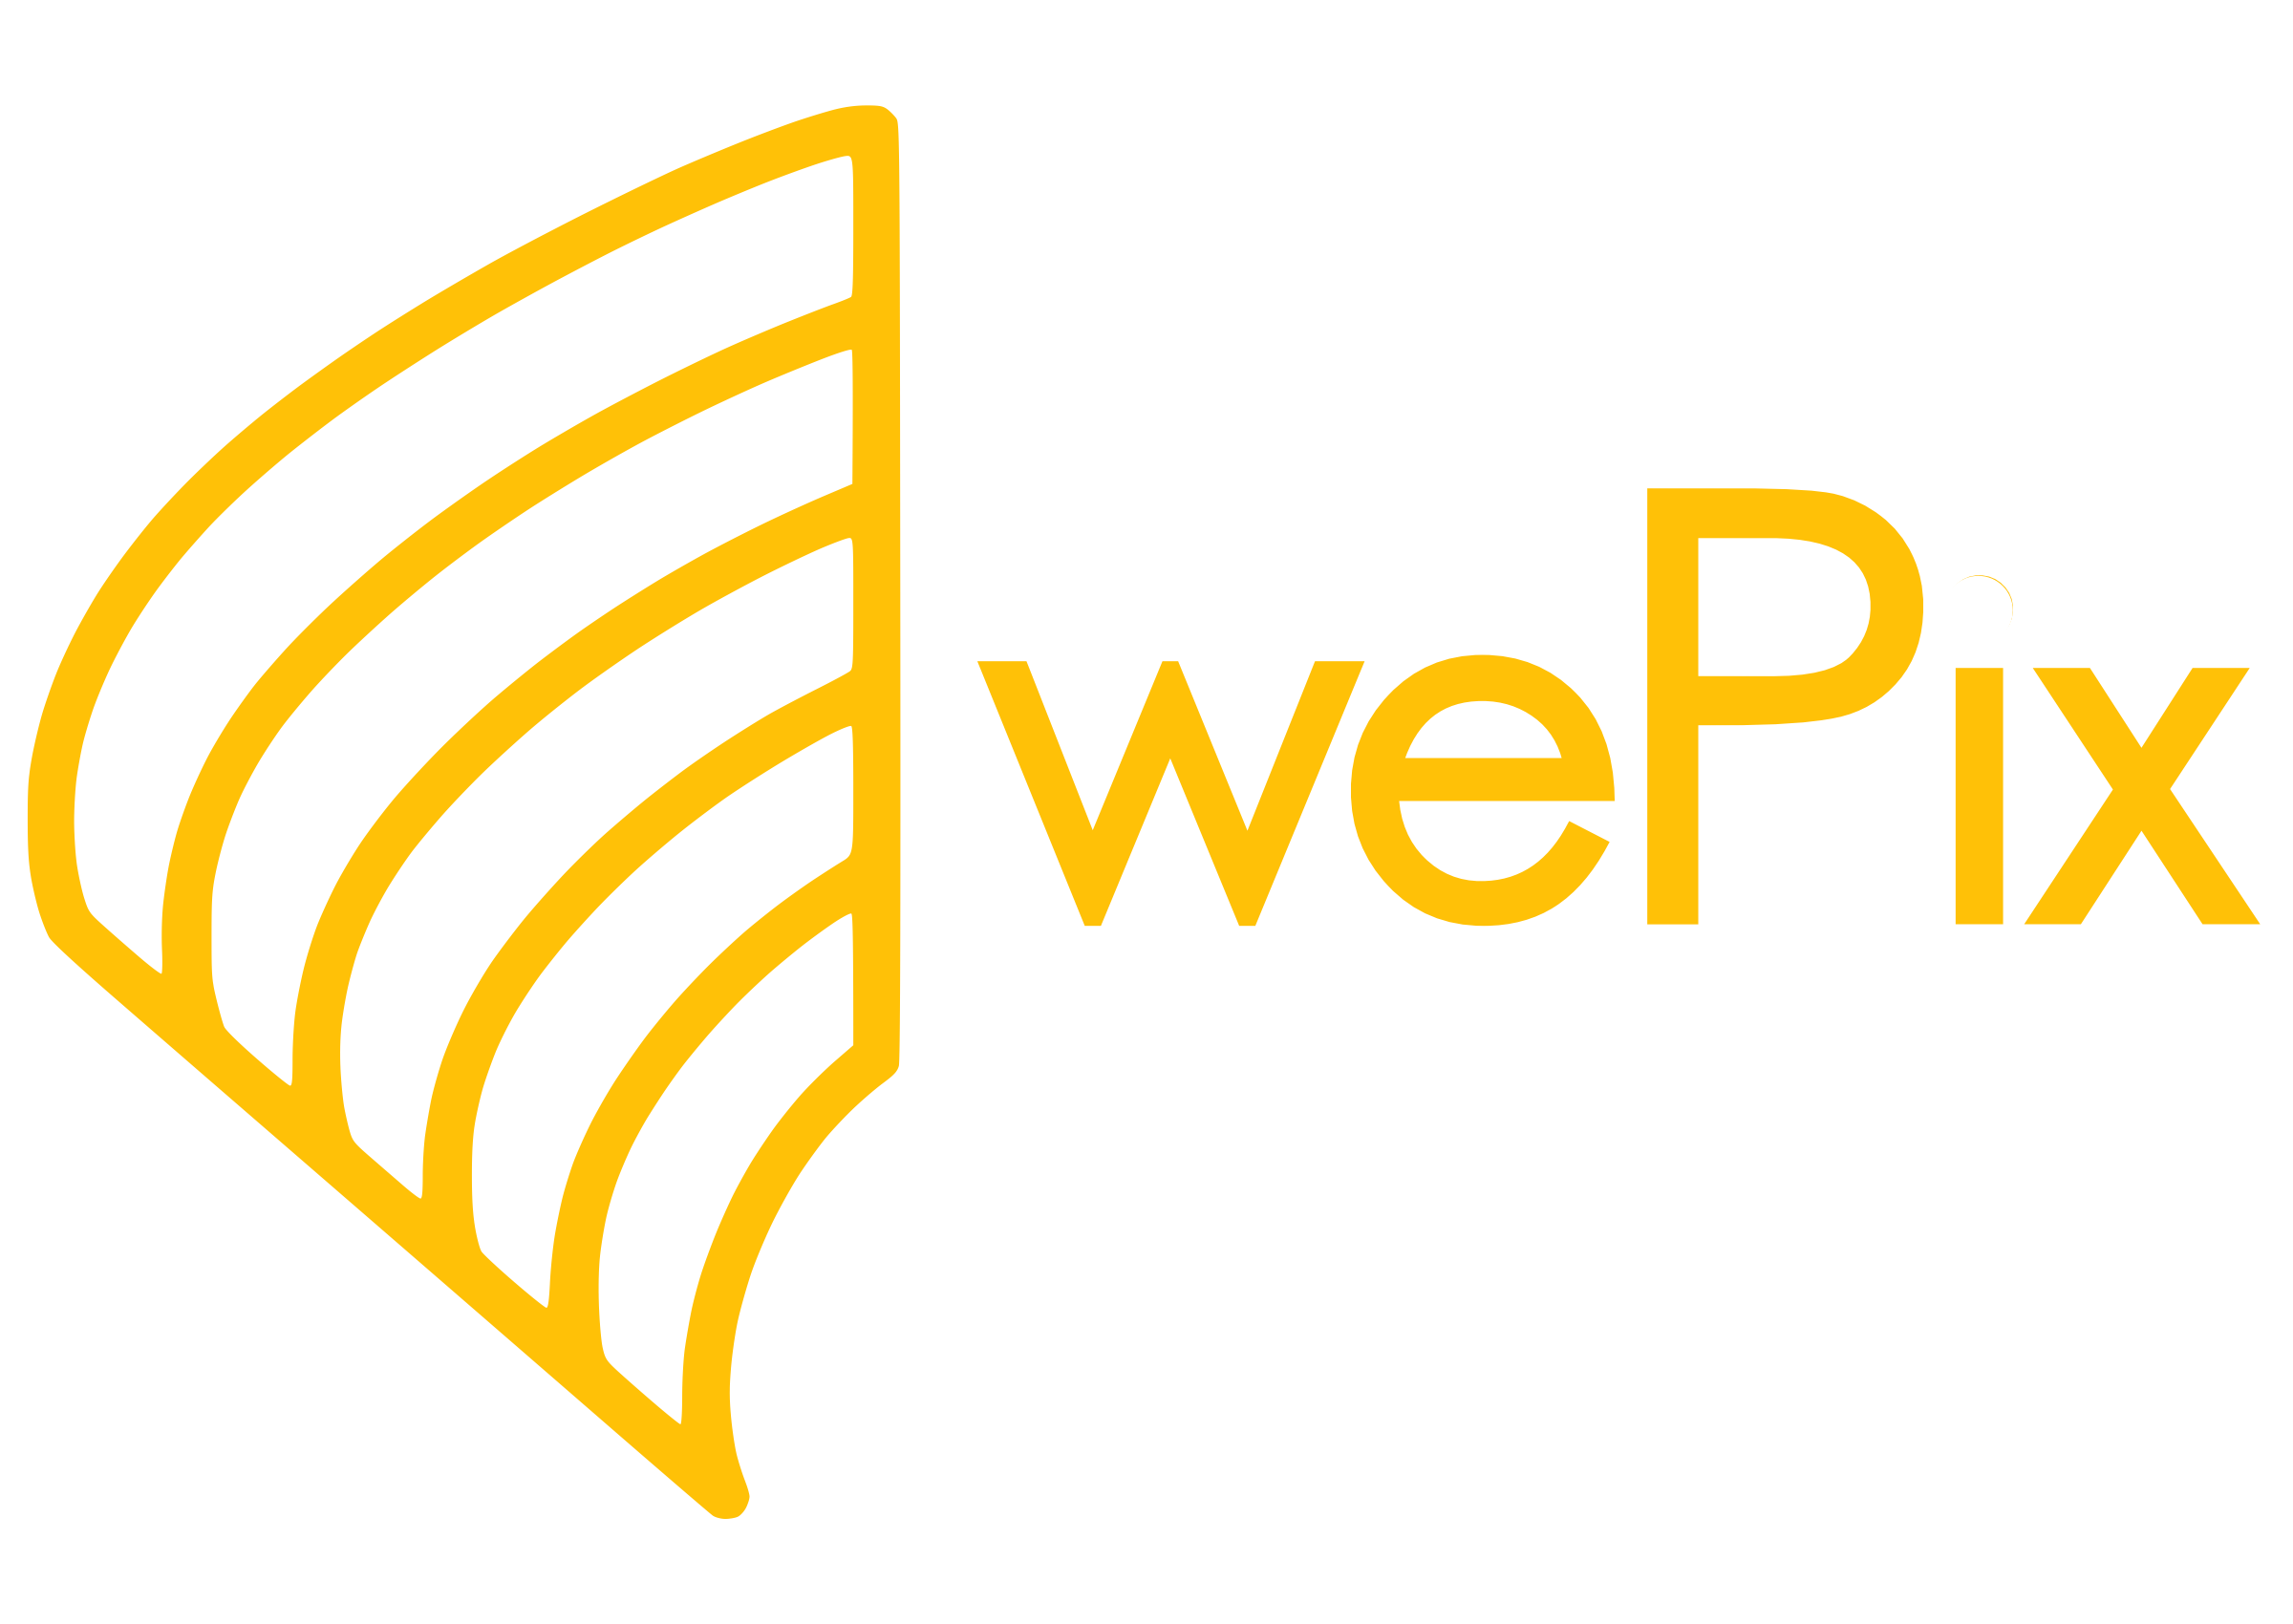 wePix arena